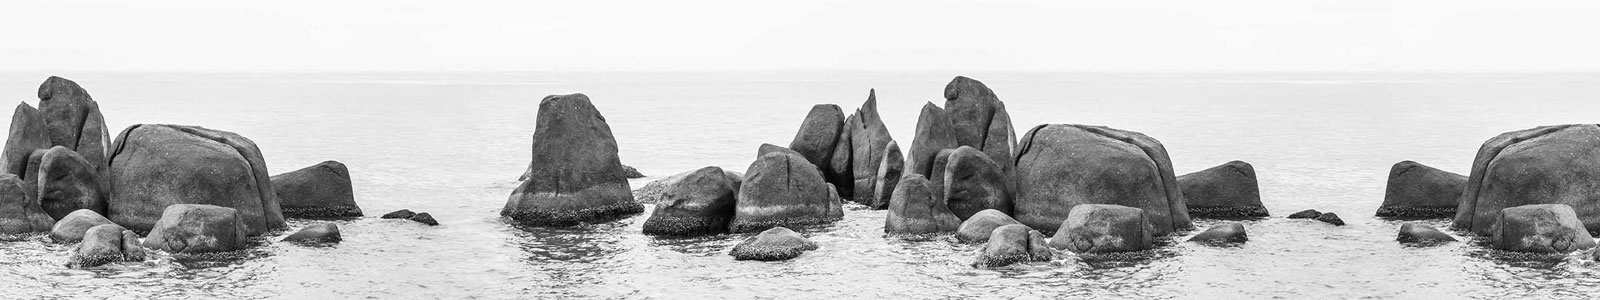 №3528 - Туманный морской пейзаж с камнями в воде